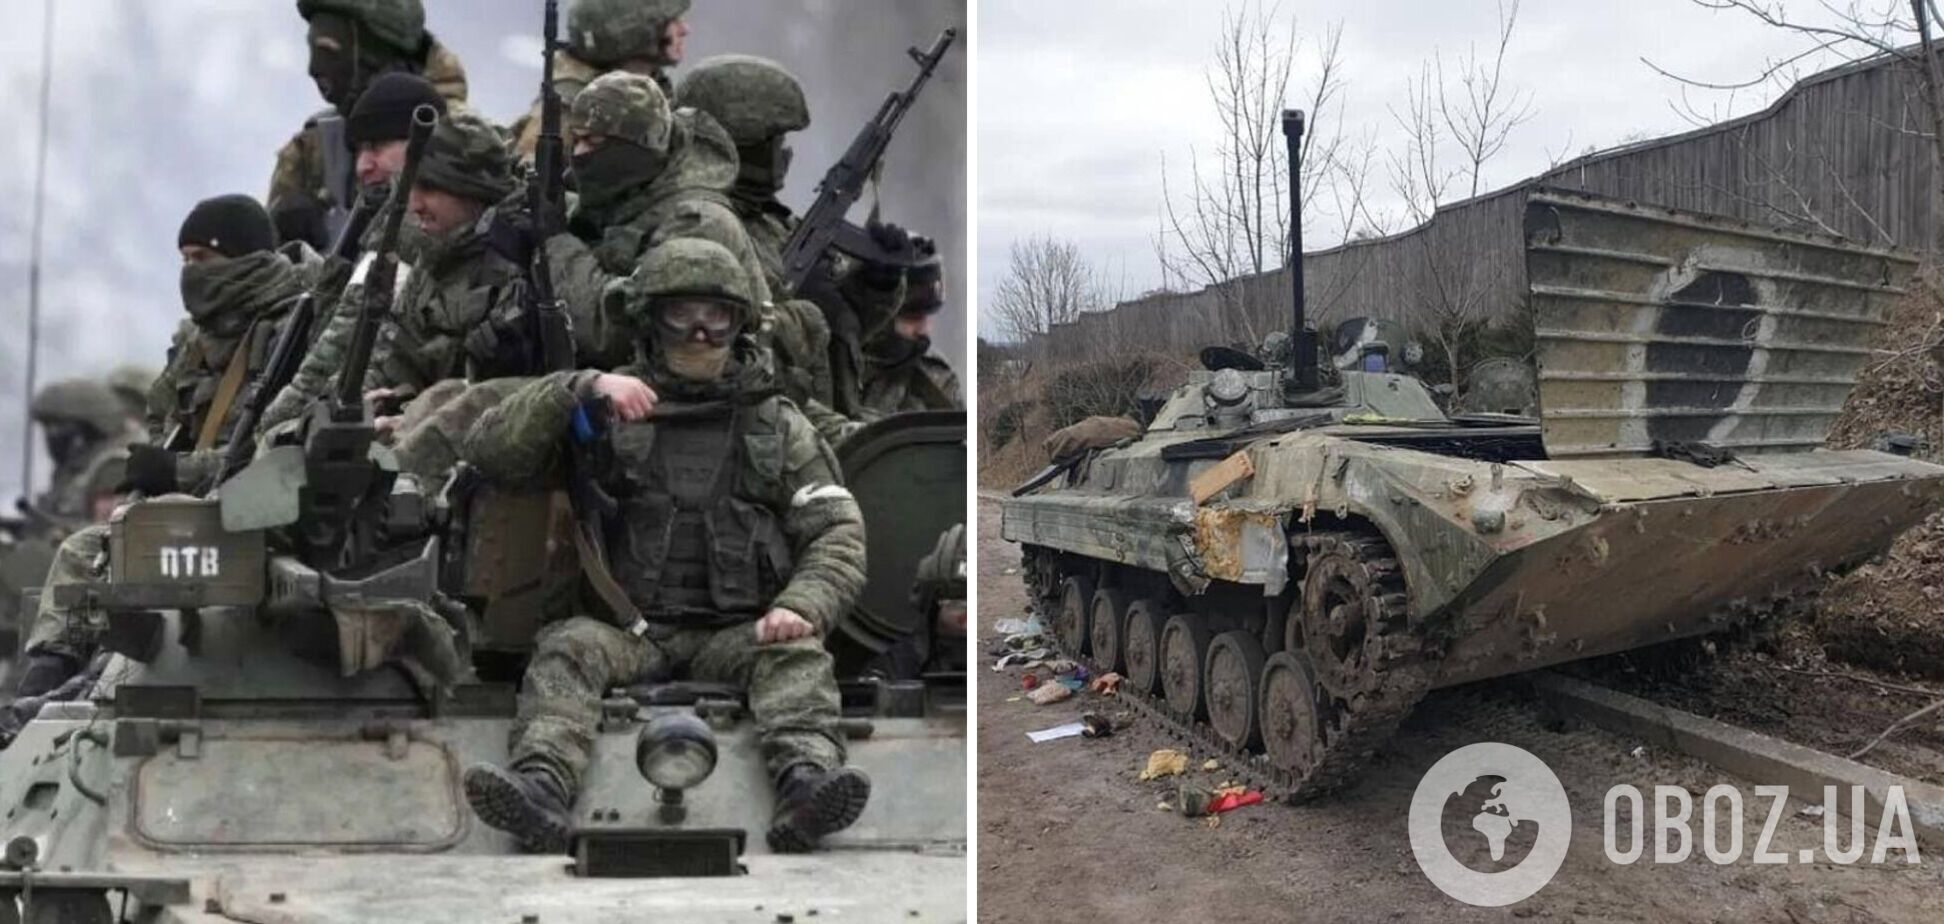 'Вирішили прорватися болотом, 60 танків потопили': окупант у розмові з матір'ю розповів про втрати в Україні. Аудіо